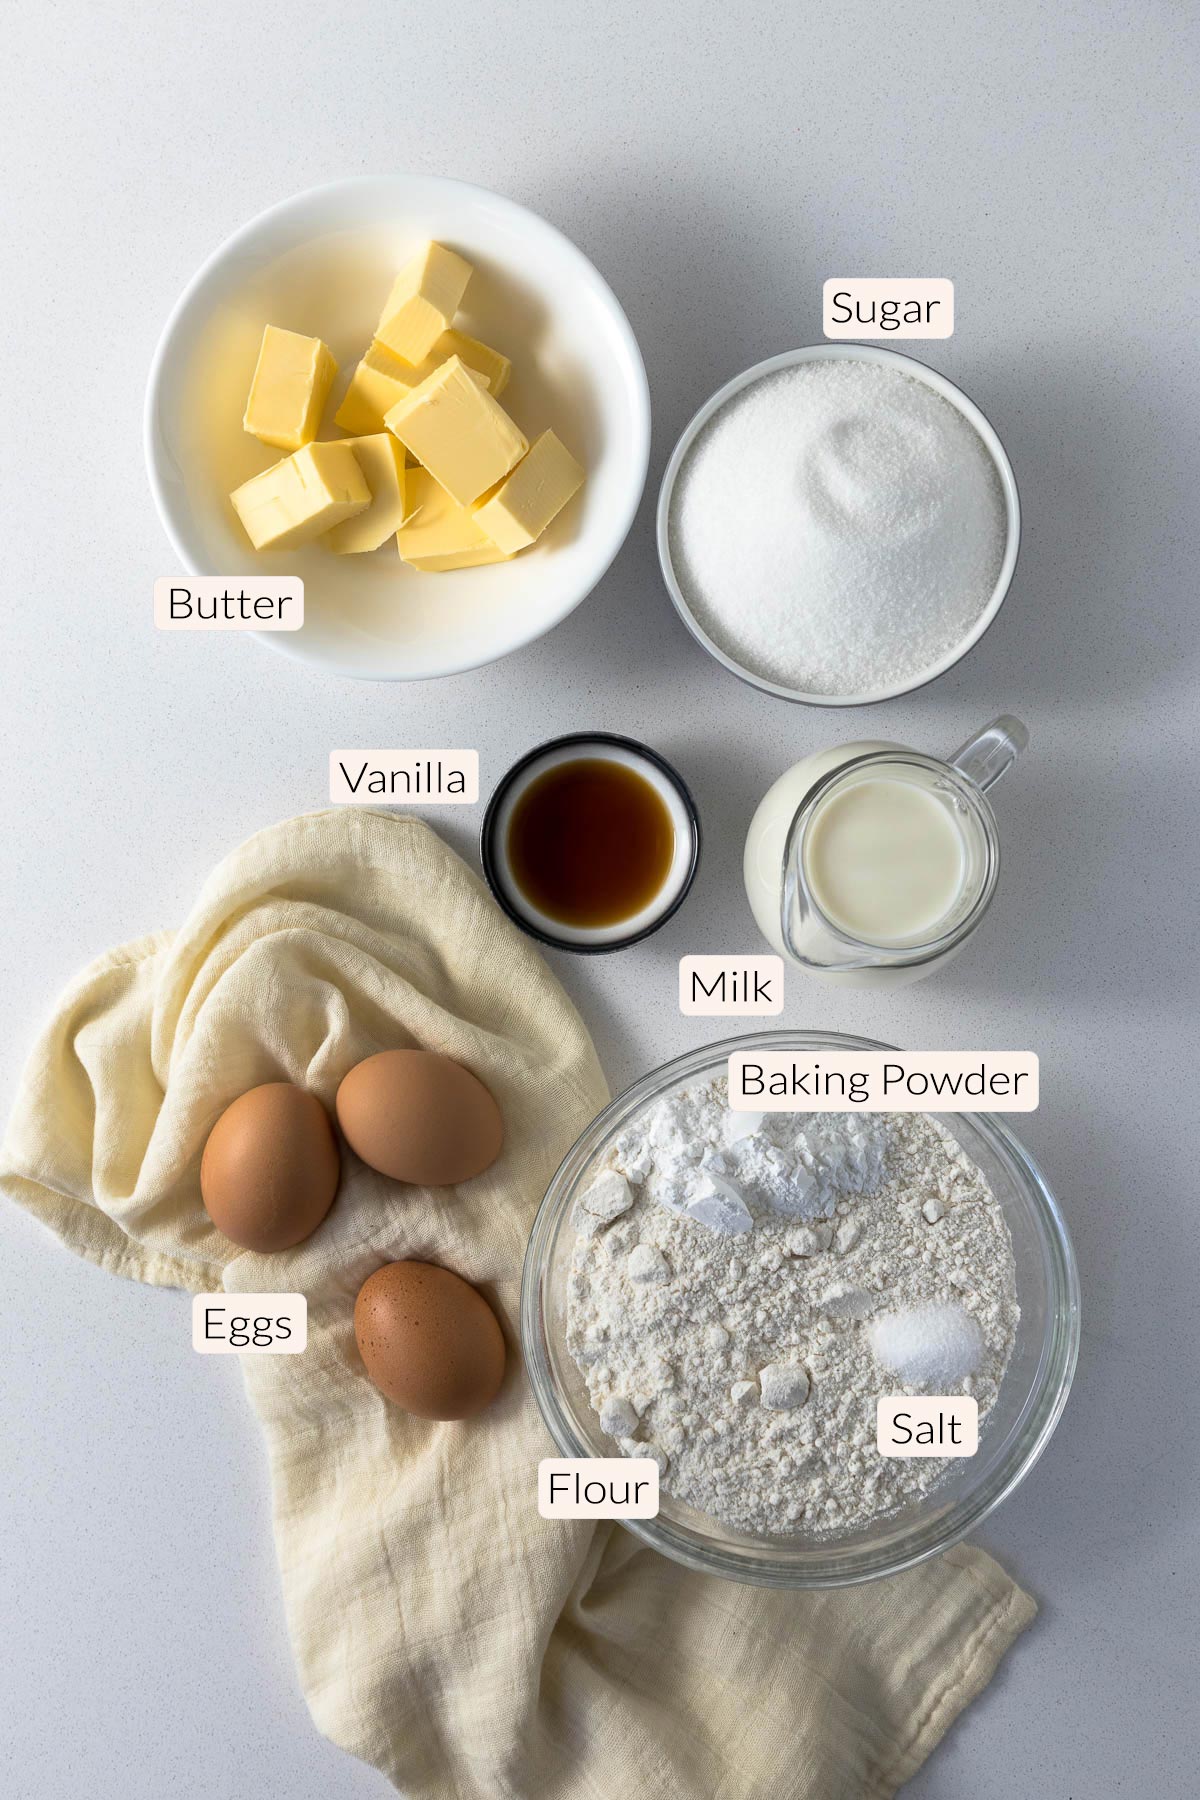 Vanilla traybake ingredients - flour, baking powder, salt, eggs, butter, vanilla, sugar.